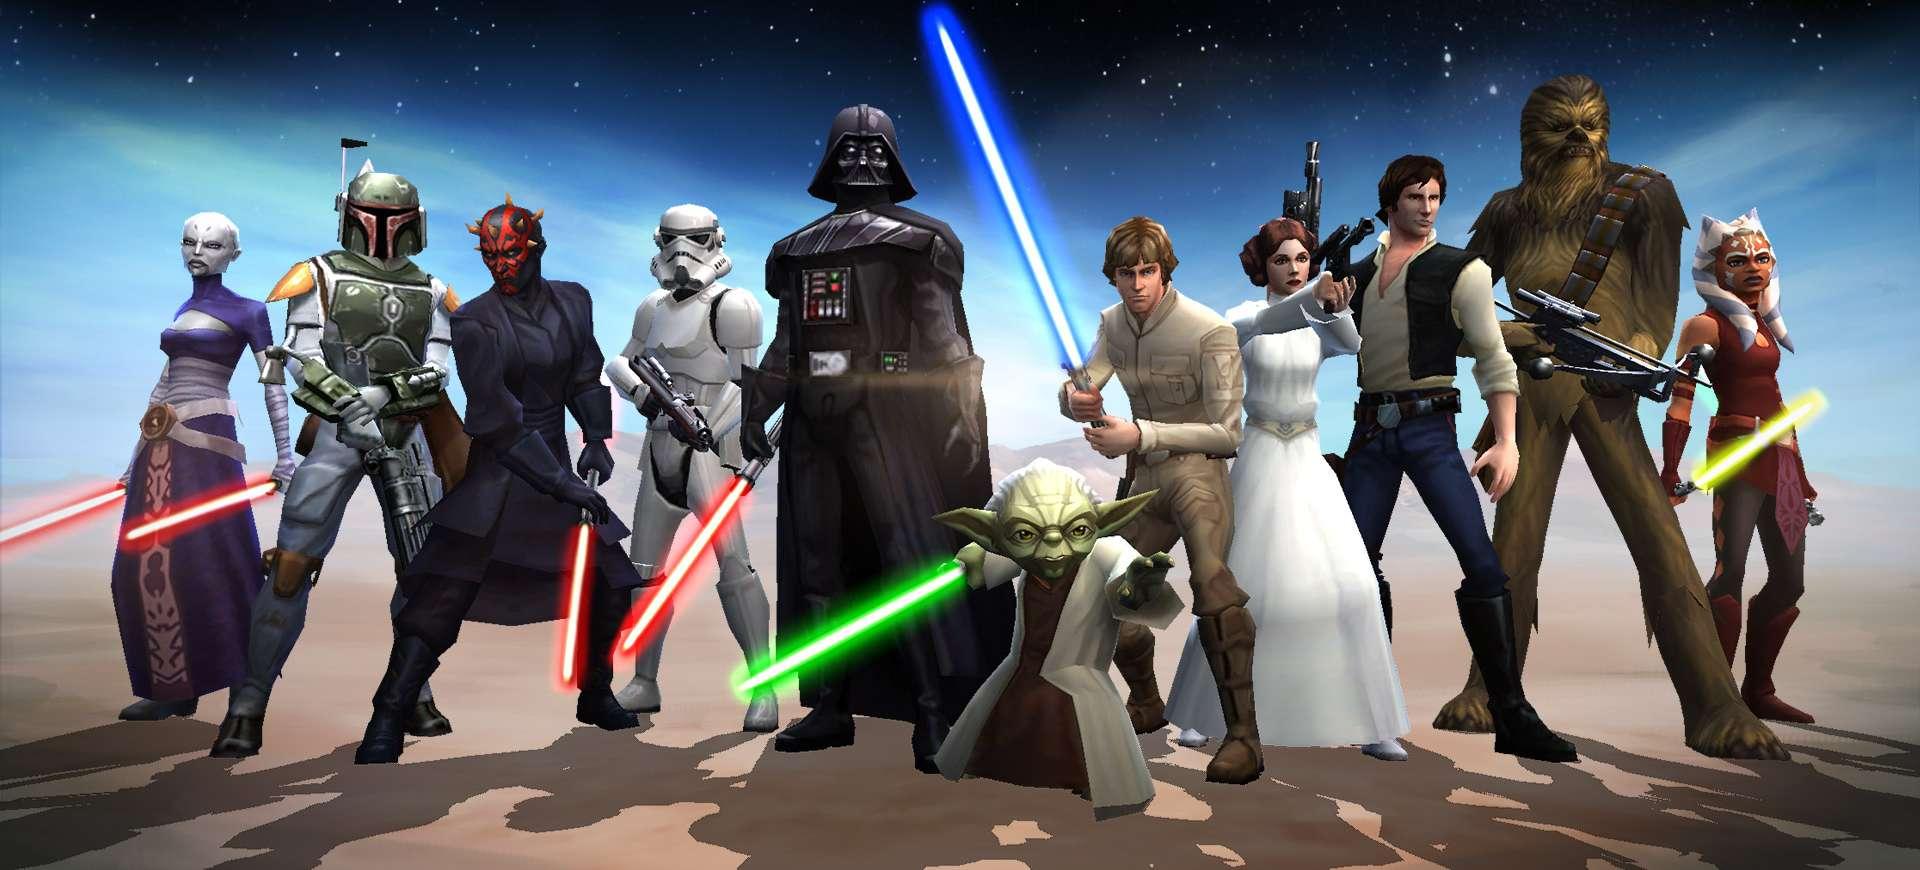 Star Wars: Galaxy of Heroes ra mắt phiên bản mới - Tin Game Mobile